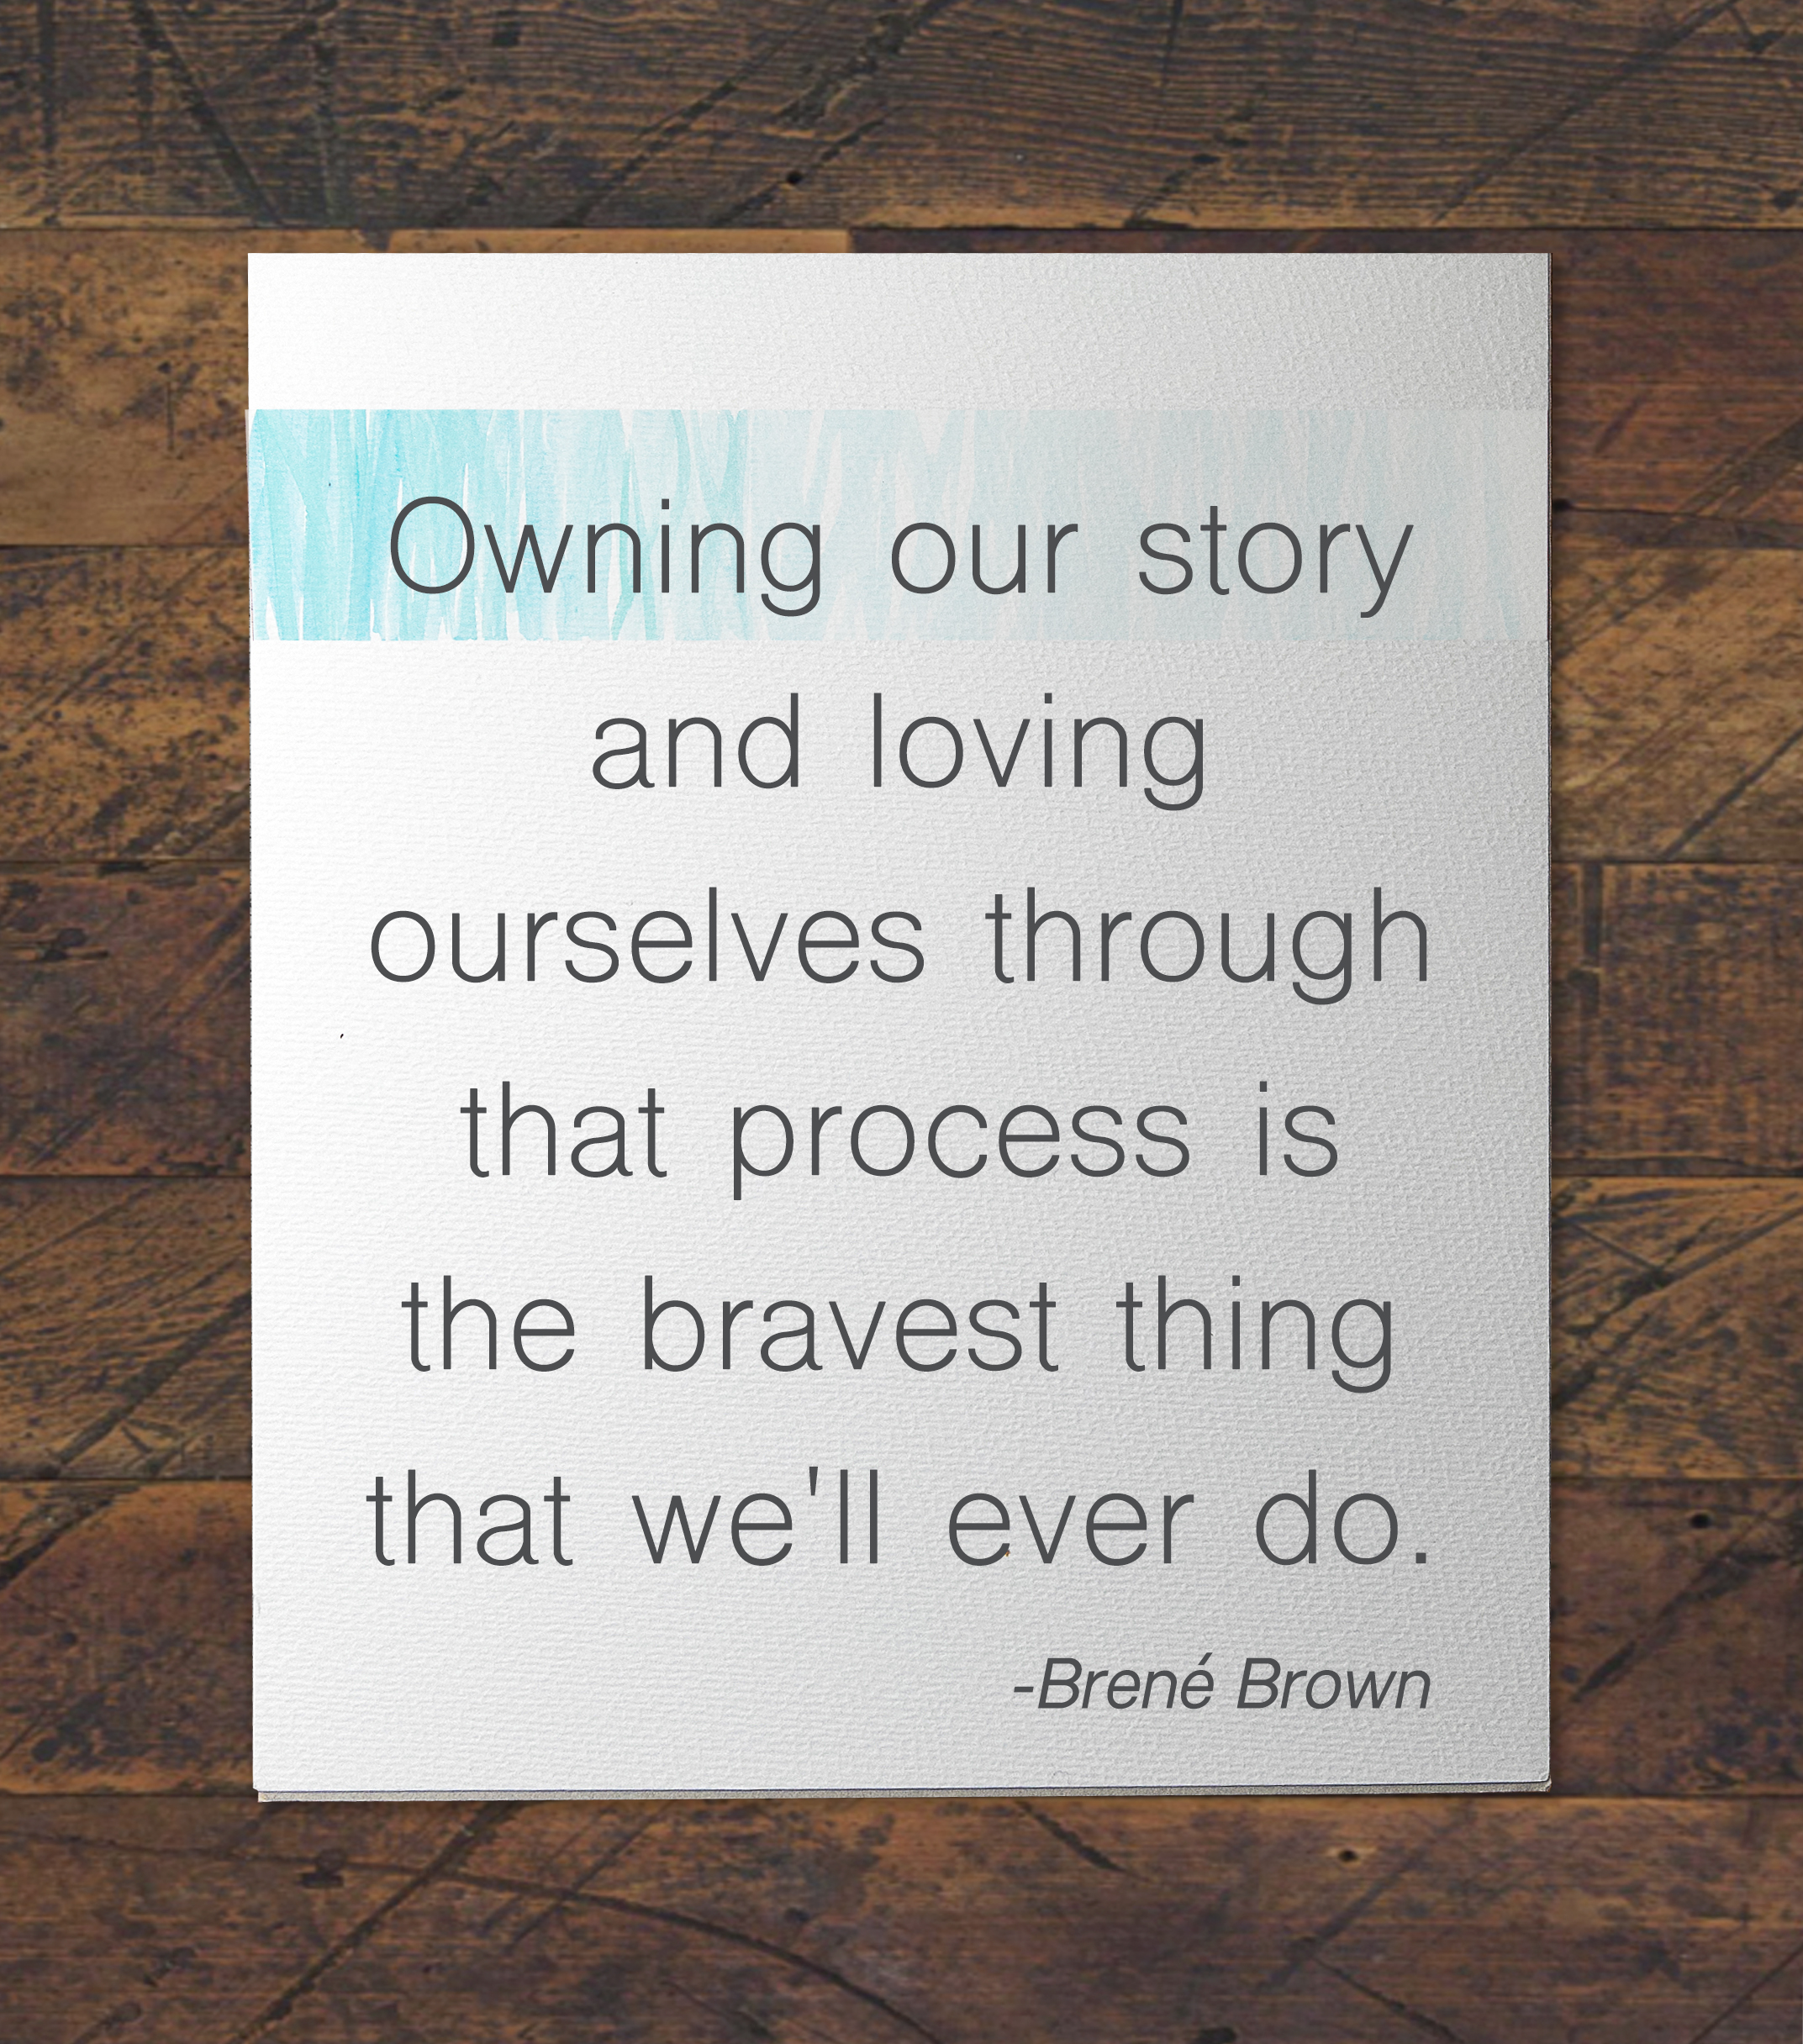 Brené Brown gets it.